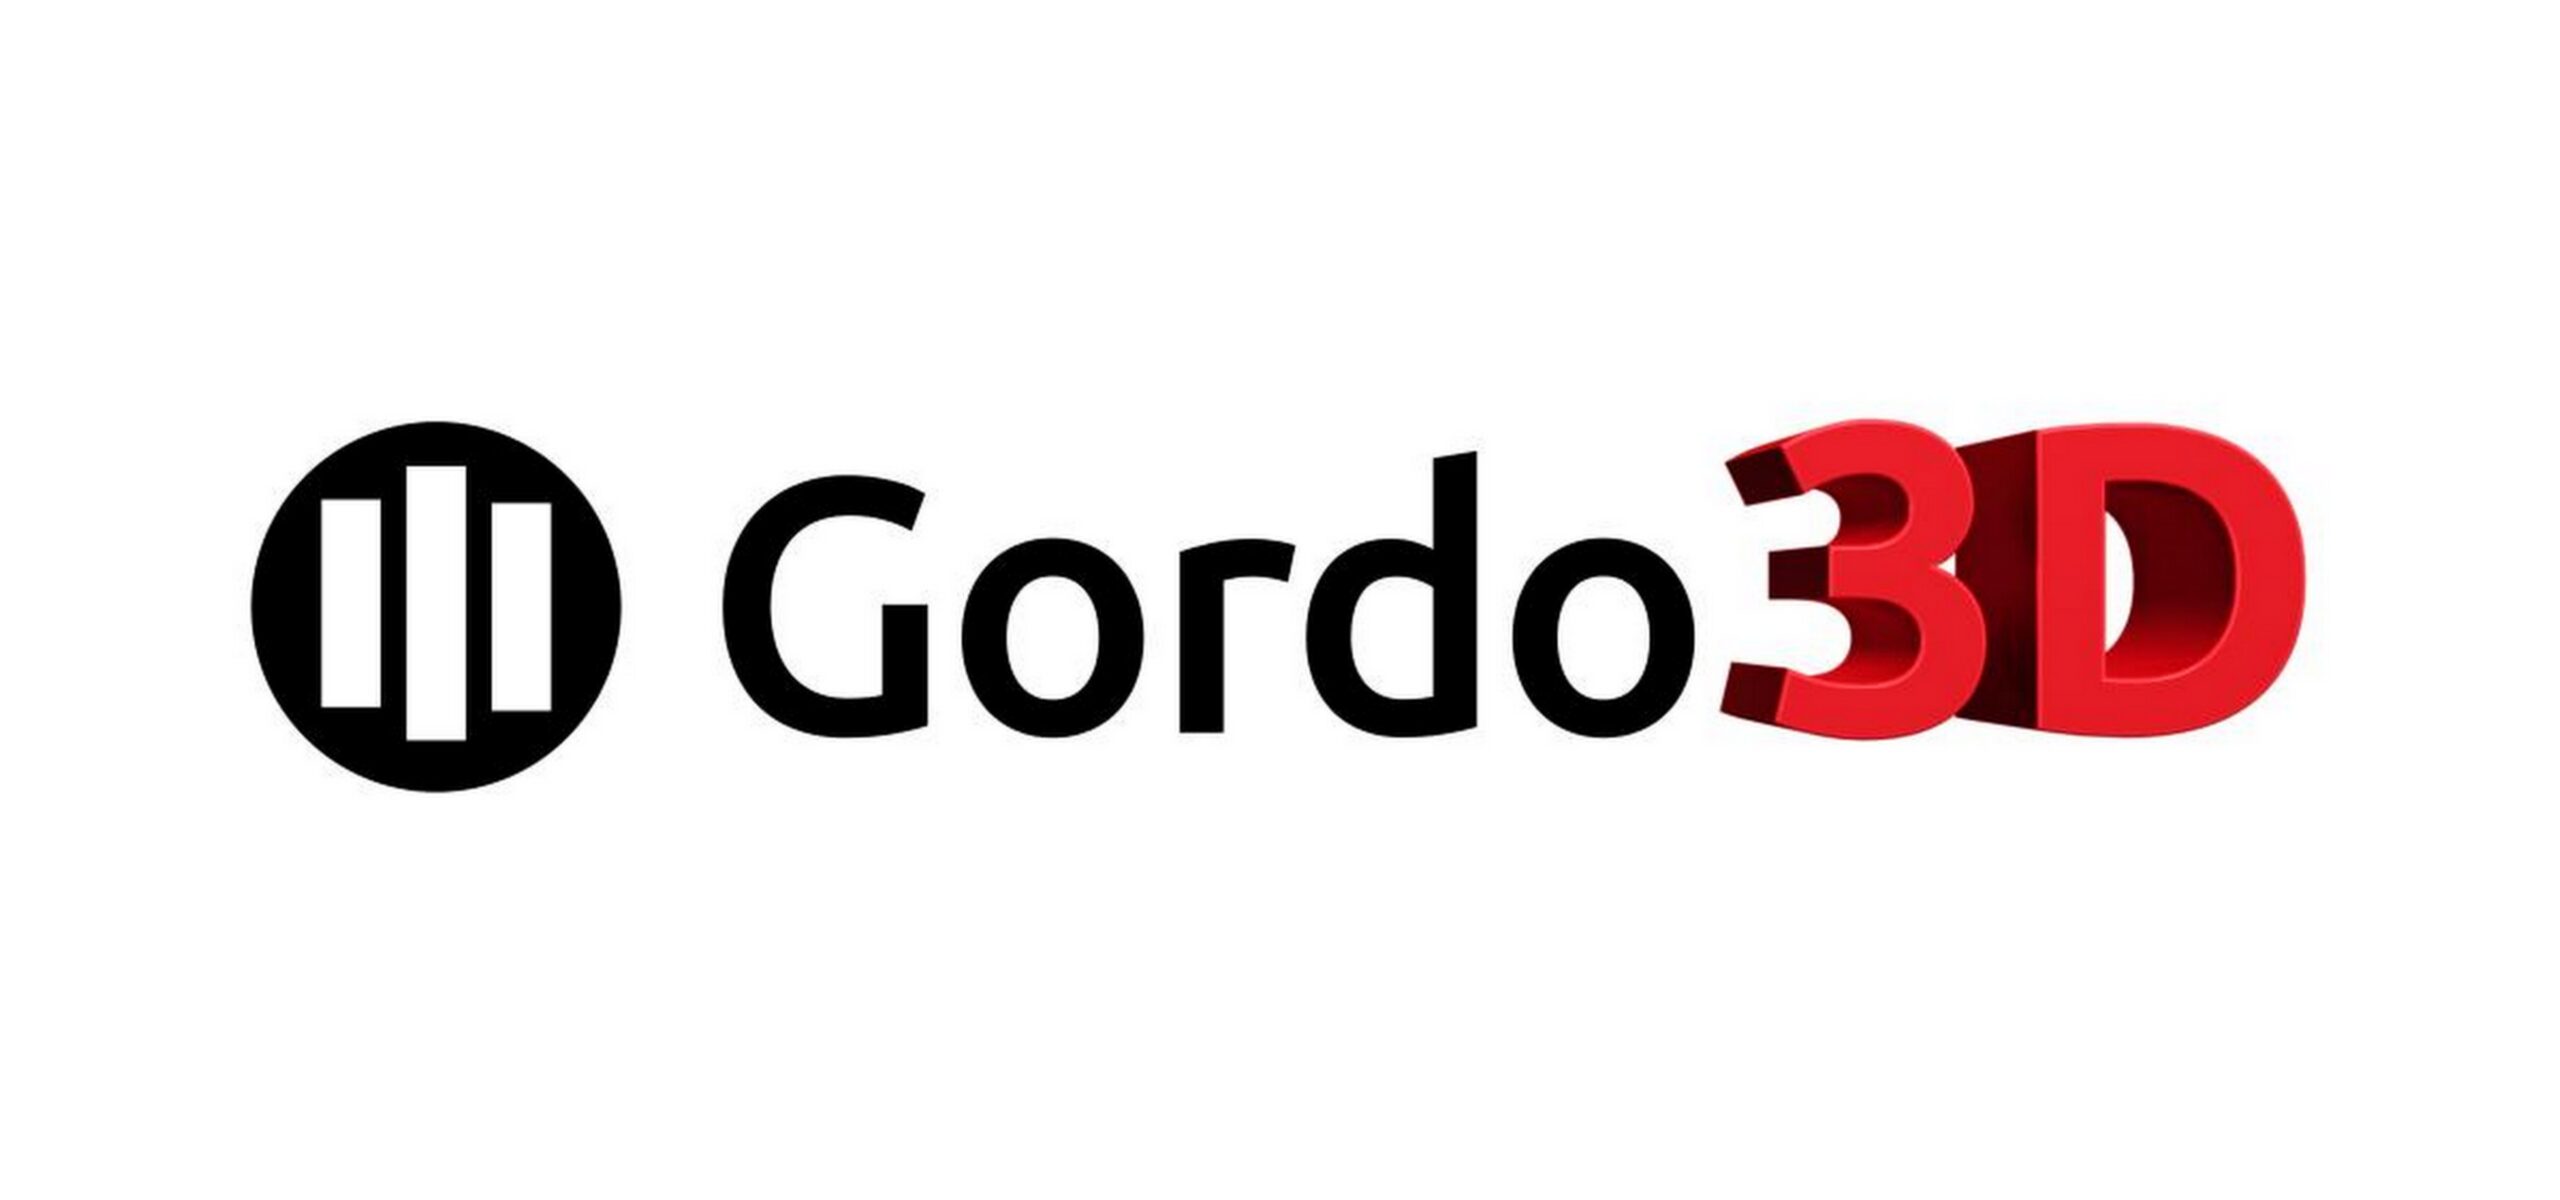 Agencja Gordo uruchamia dział wyspecjalizowany w wydrukach 3D Technologie Mediarun Com Gordo3d scaled